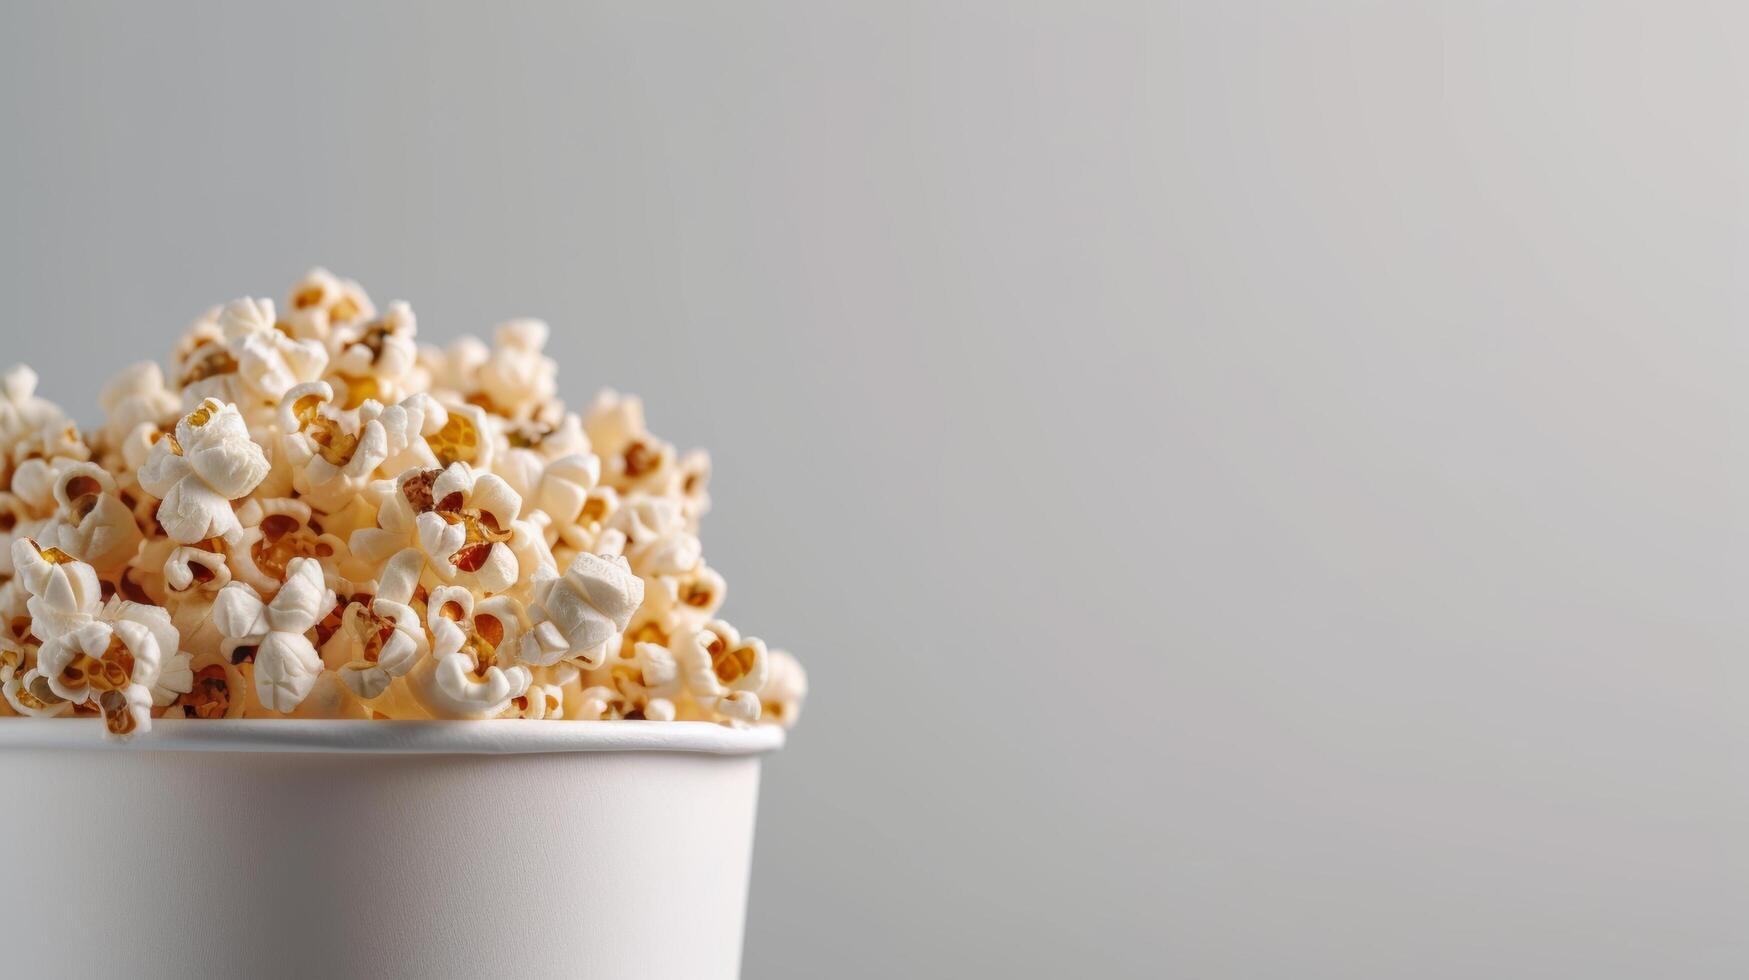 ai gegenereerd een popcorn emmer overlopend met gouden pitten, veelbelovend een heerlijk film kijken ervaring foto